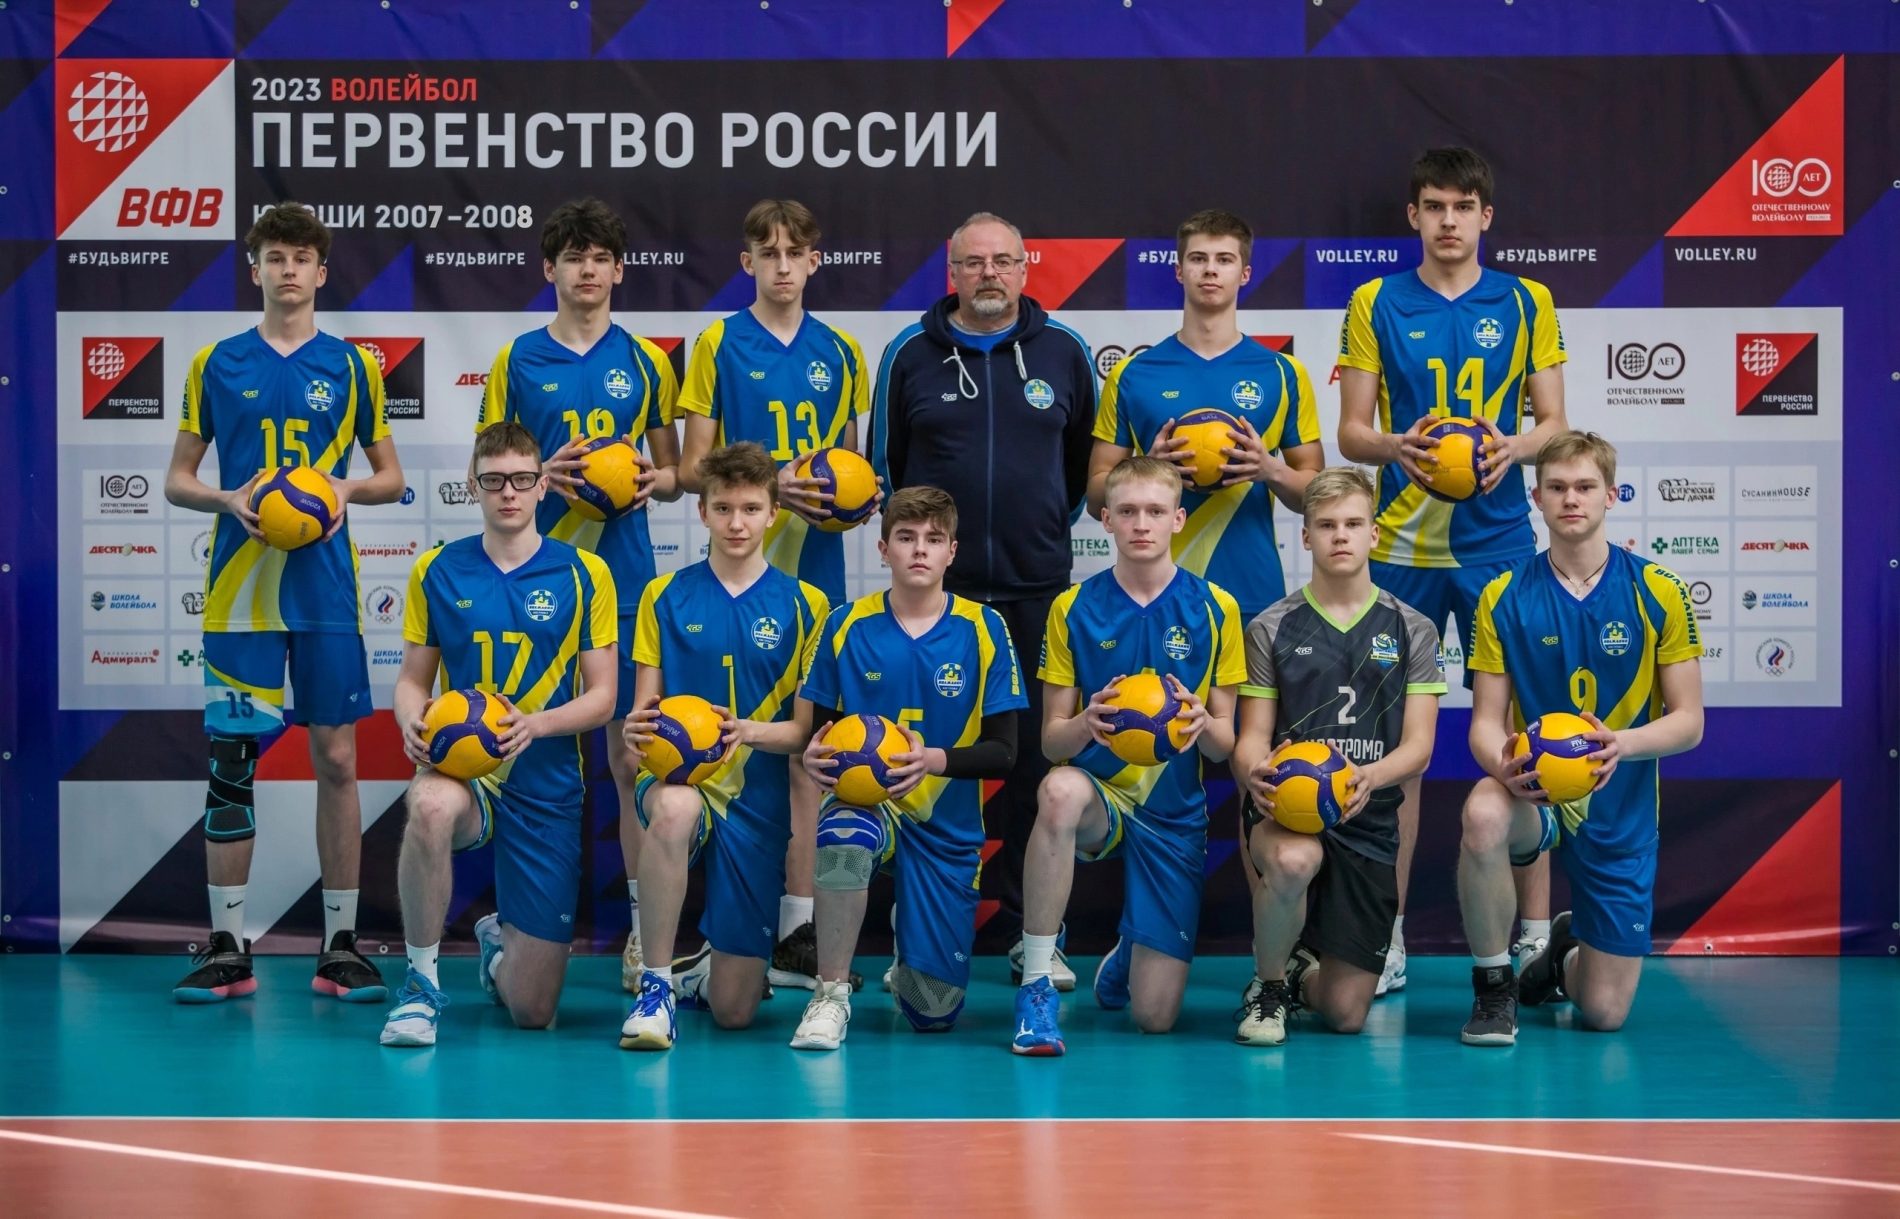 Костромские волейболисты сразятся с сильнейшими командами из разных уголков страны на Первенстве России